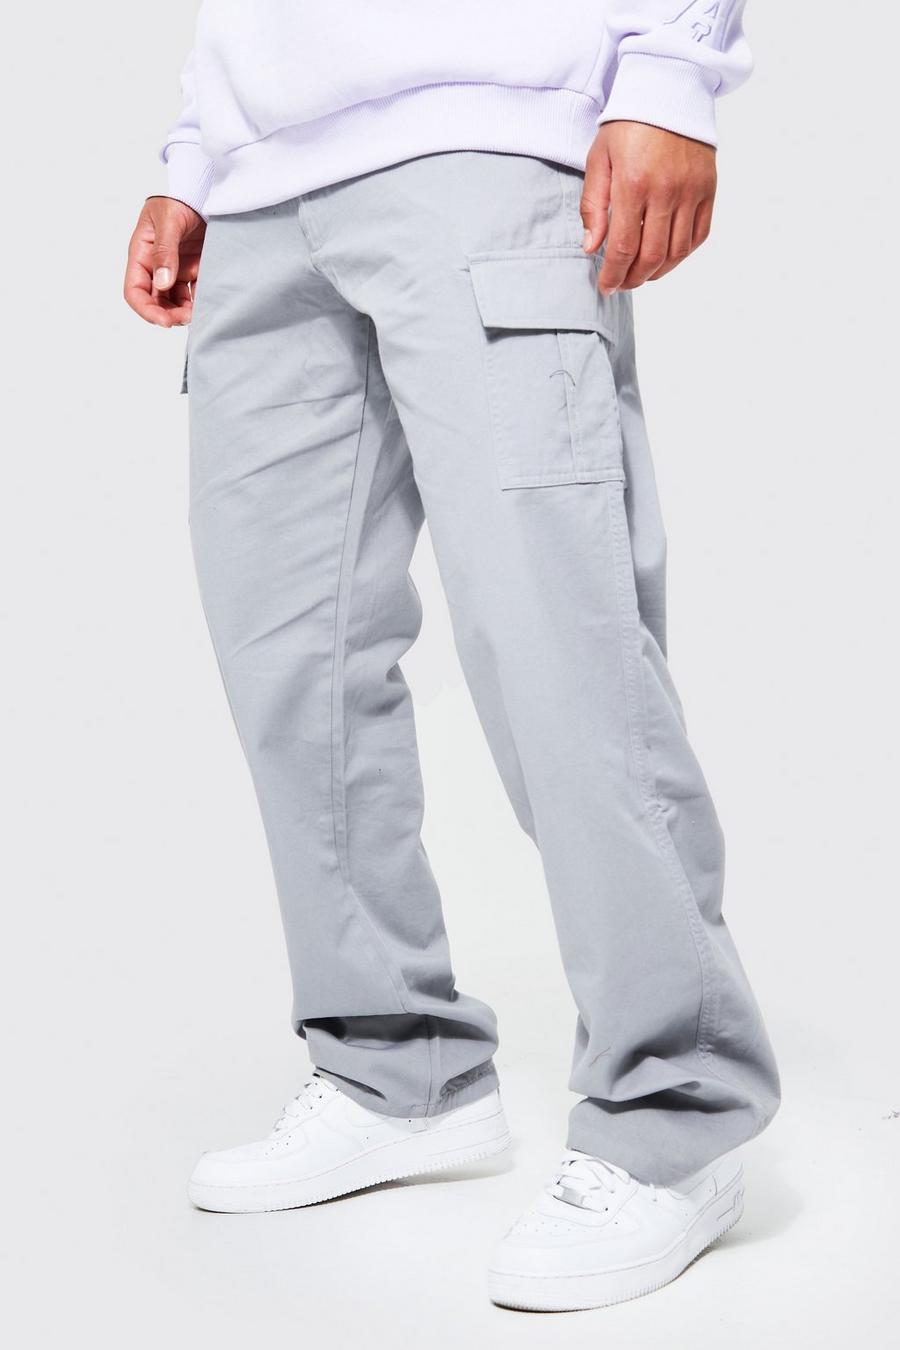 אפור מכנסי דגמ'ח בגזרה משוחררת לגברים גבוהים